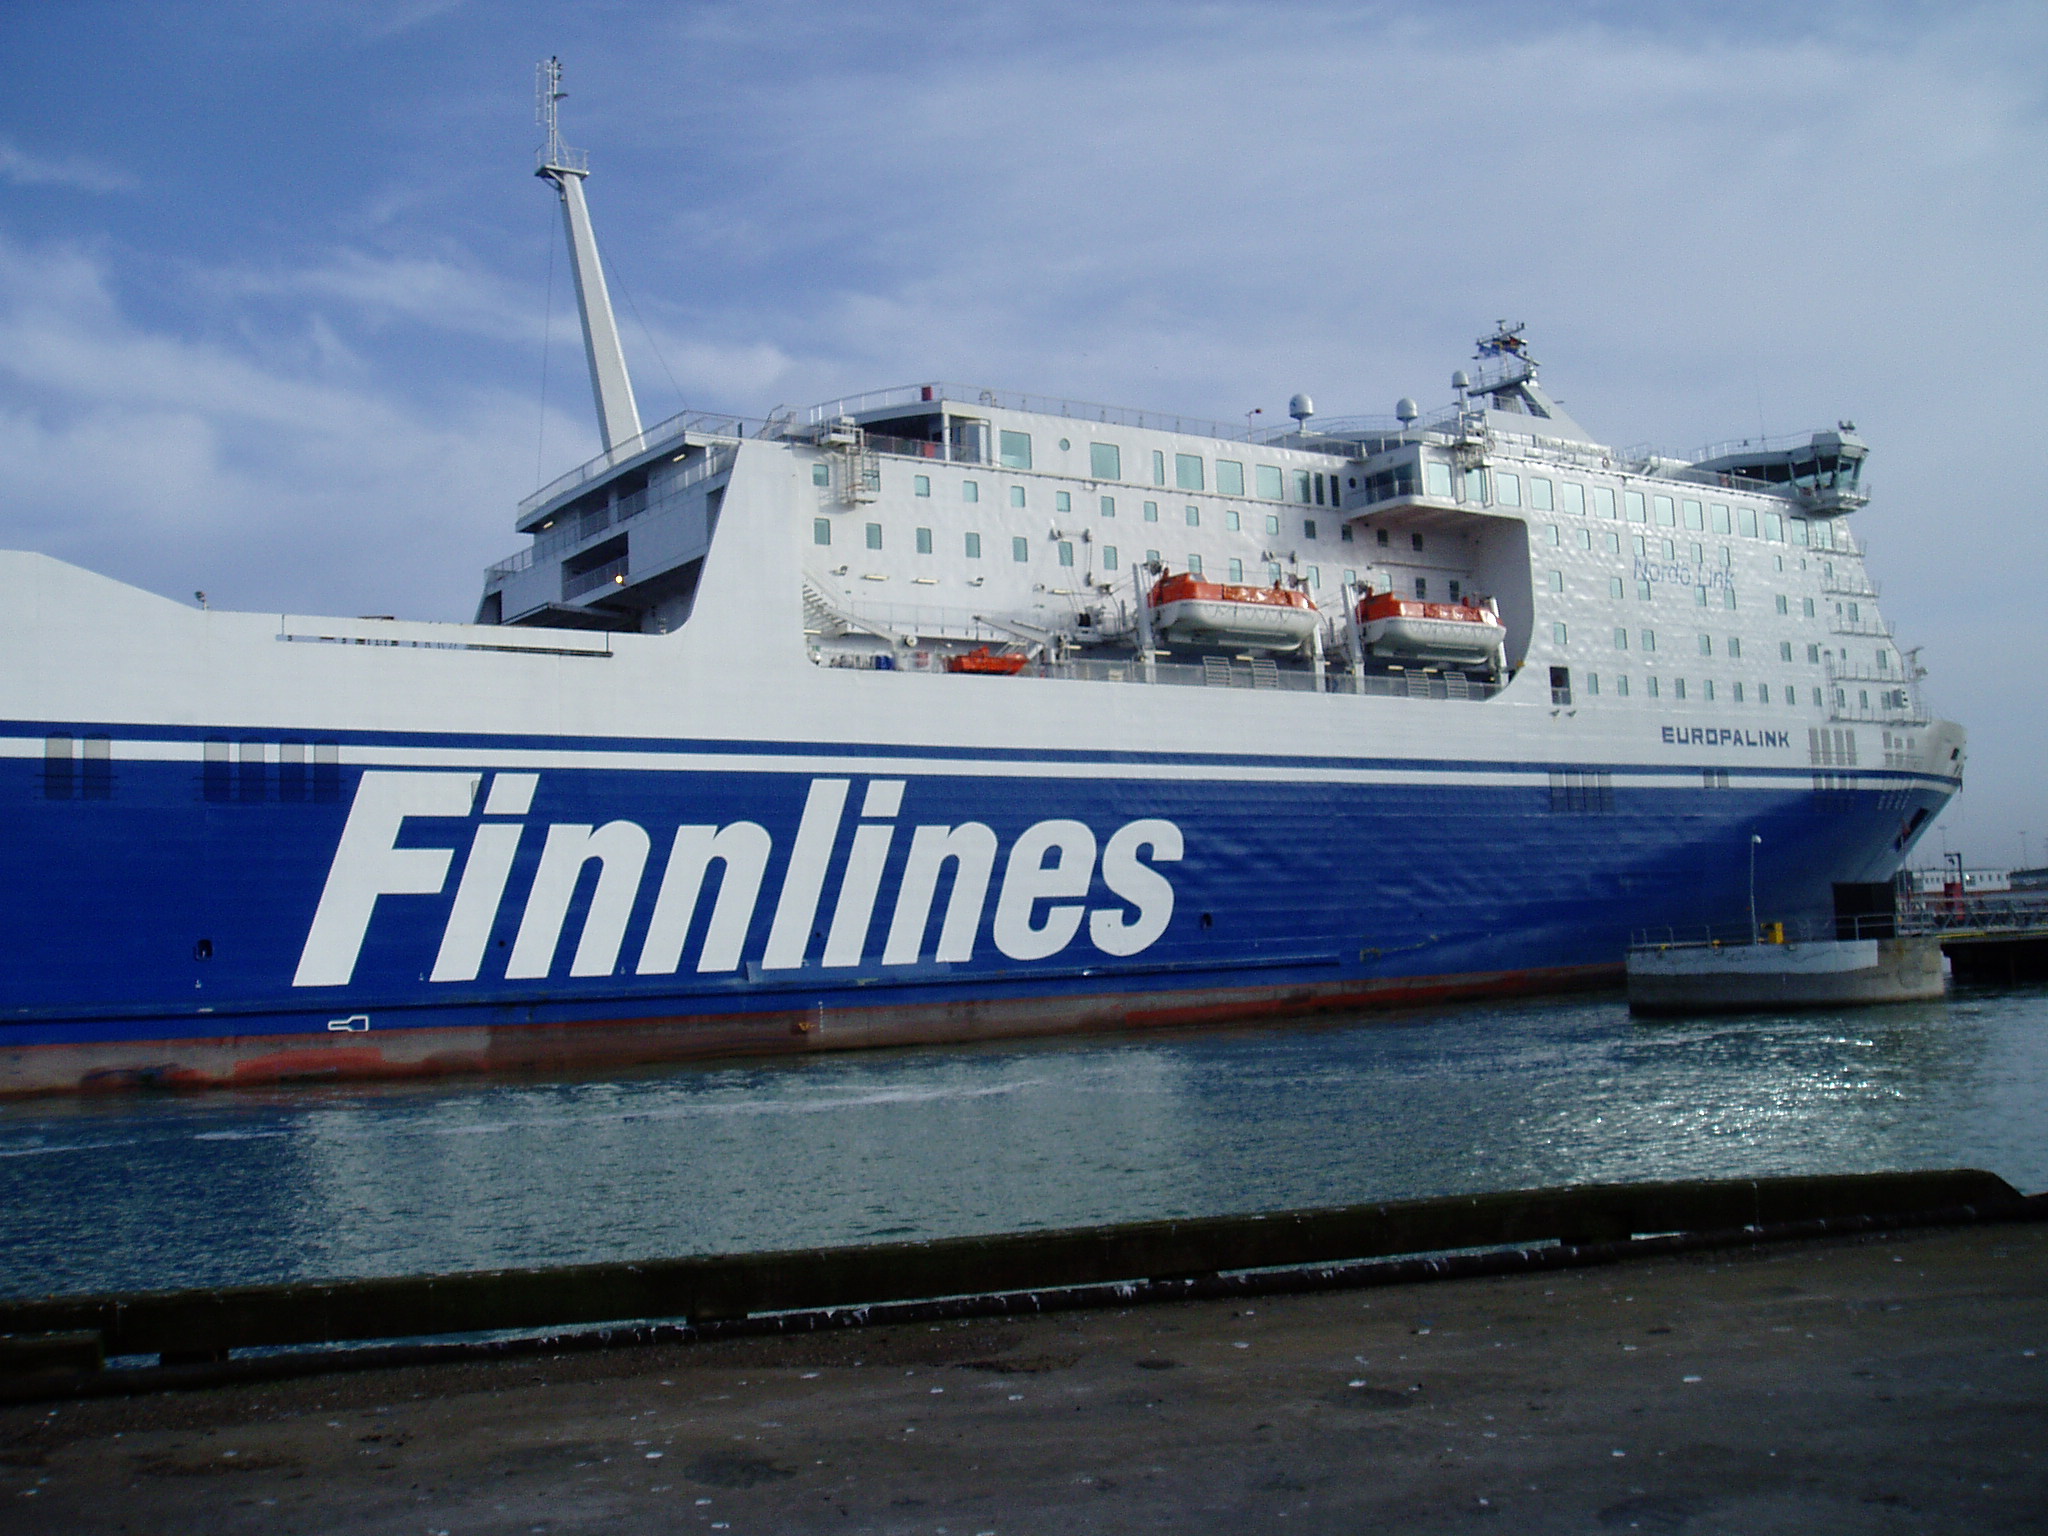 Finnlinesin tilinpäätös 2020: Varustamo investoi 0,5 miljardia euroa vihreän teknologian aluksiin ja pitkäjänteiseen kasvuun